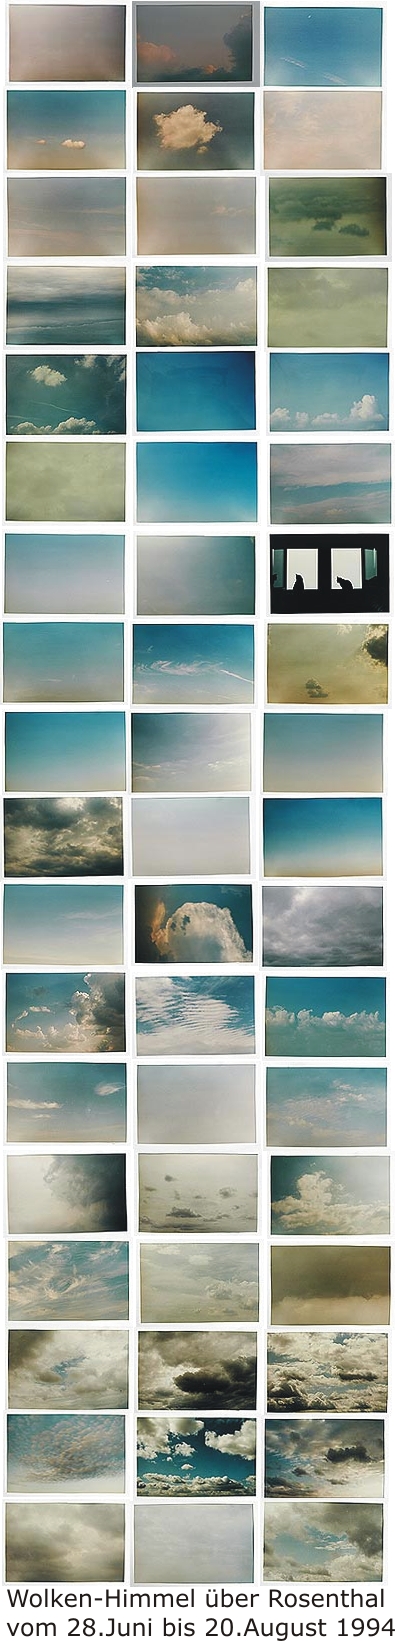 Wolken-Himmel 1994